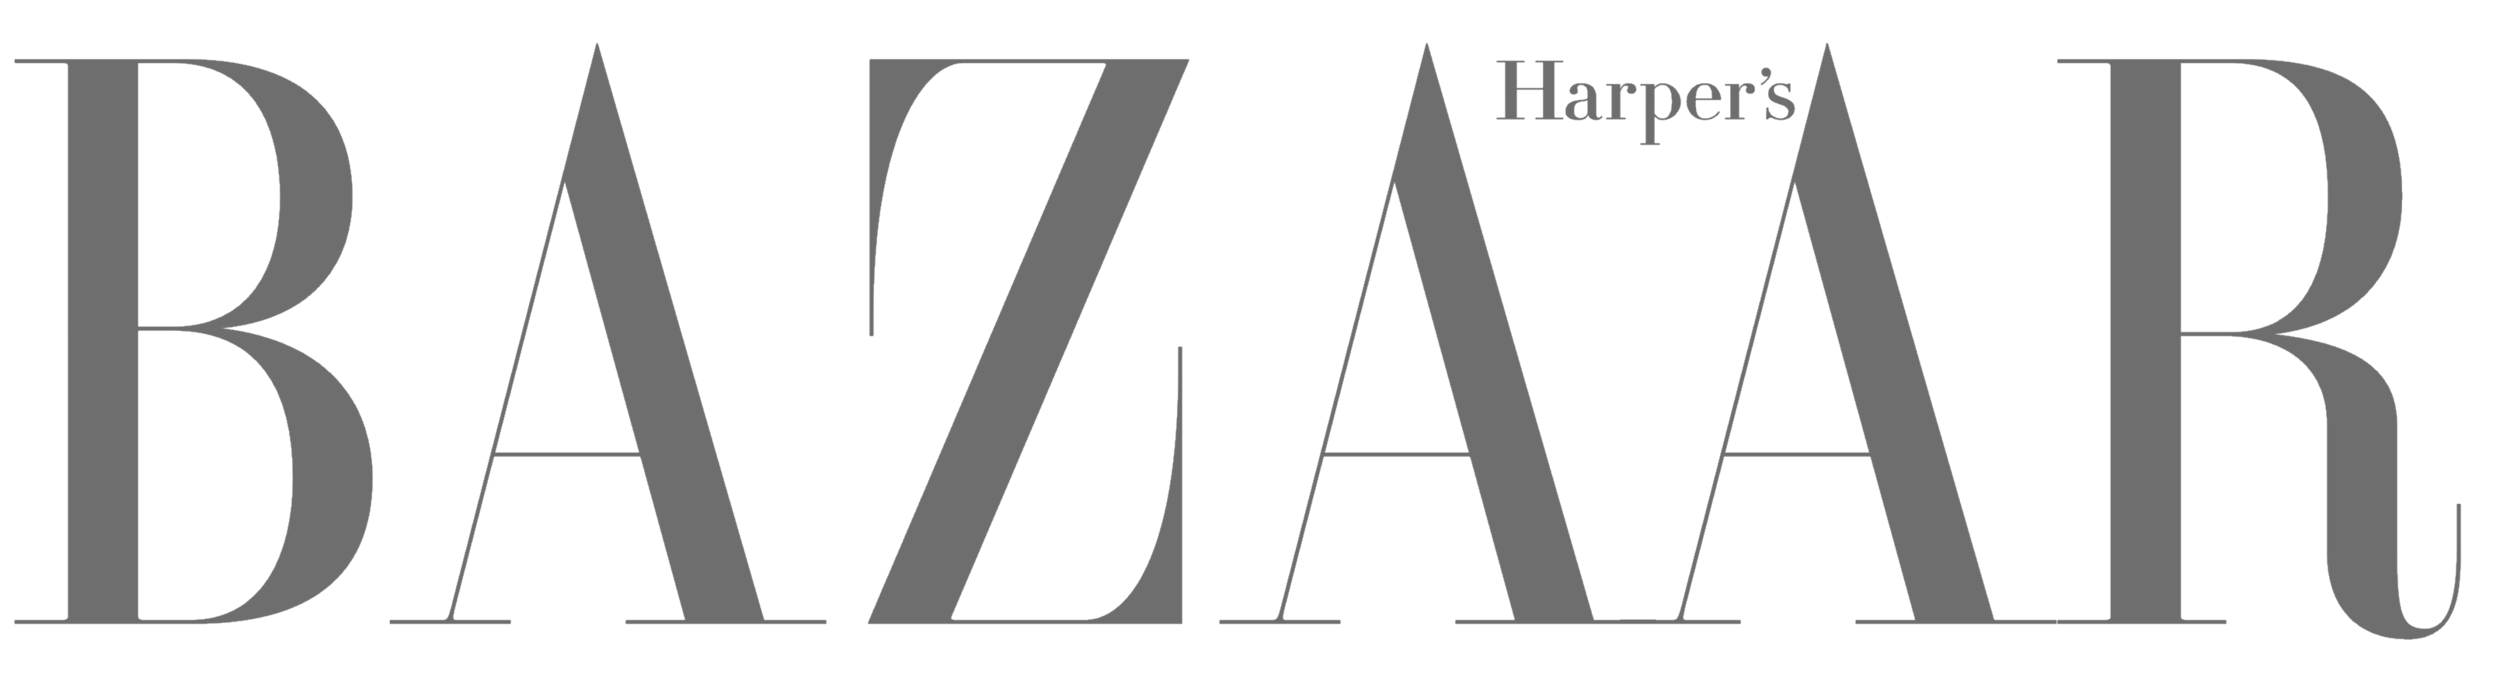 Harpers_Bazaar_logo_logotype-grey.png